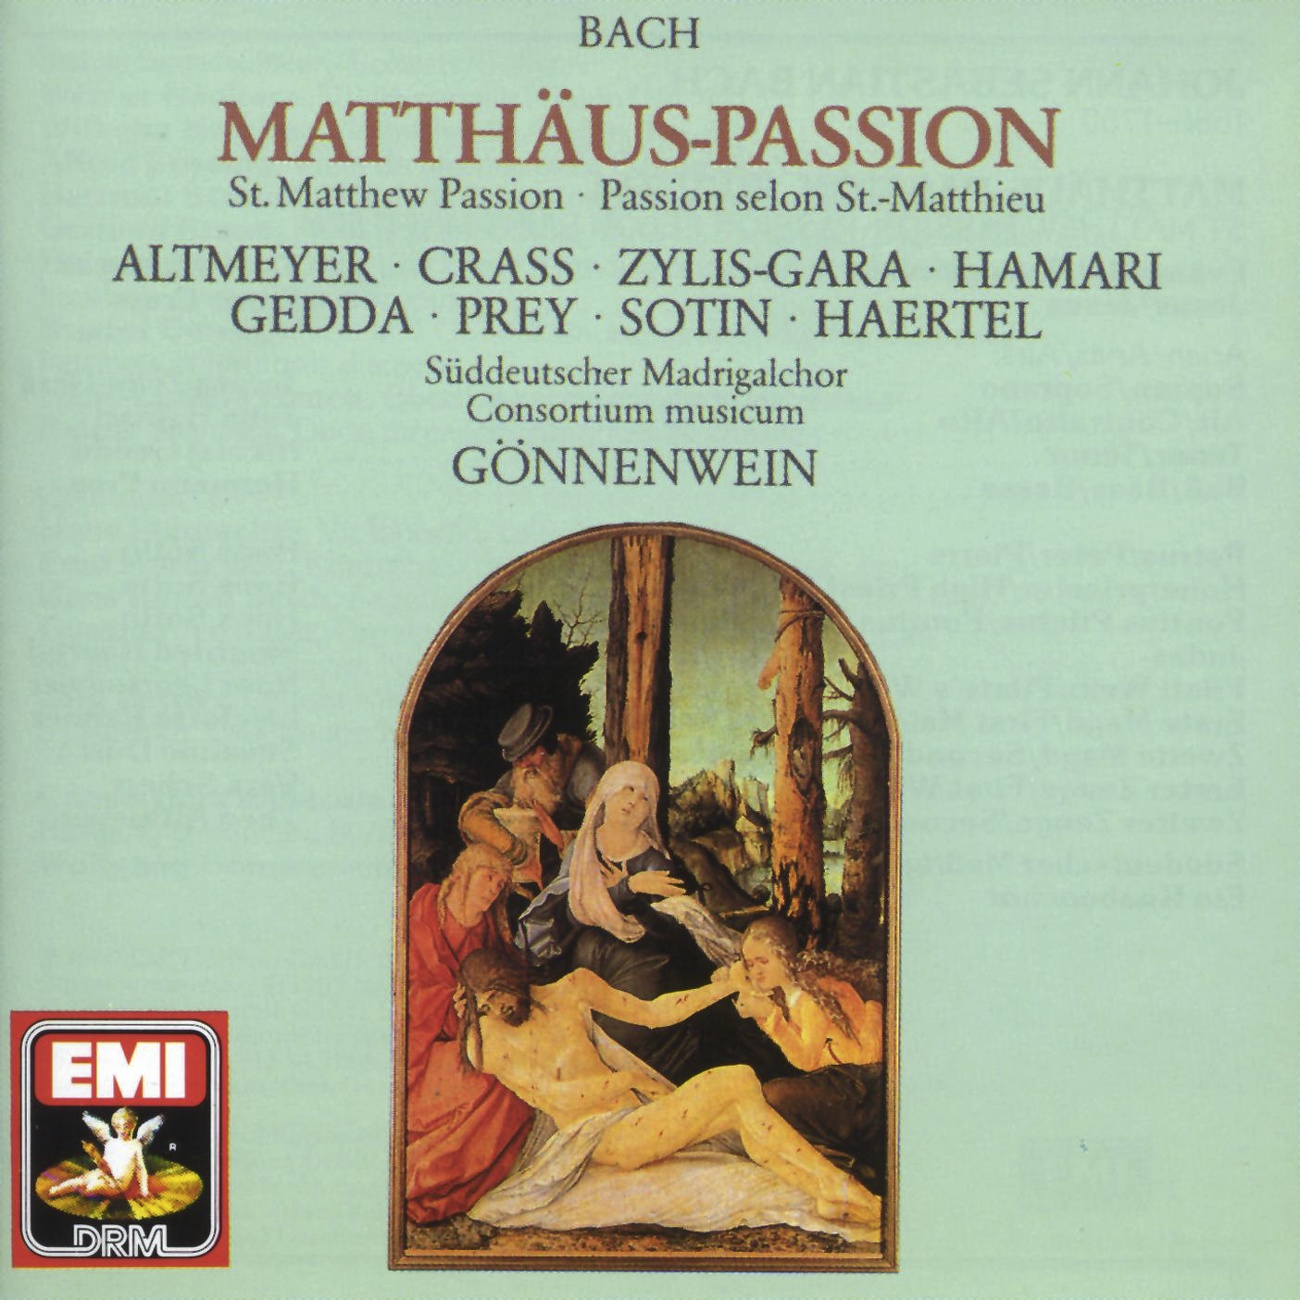 Matth usPassion BWV 244  Oratorium in 2 Teilen 1989 Digital Remaster, 1. Teil: Nr. 35  Choral: O Mensch, Bewein' Dein Sü nde Gr